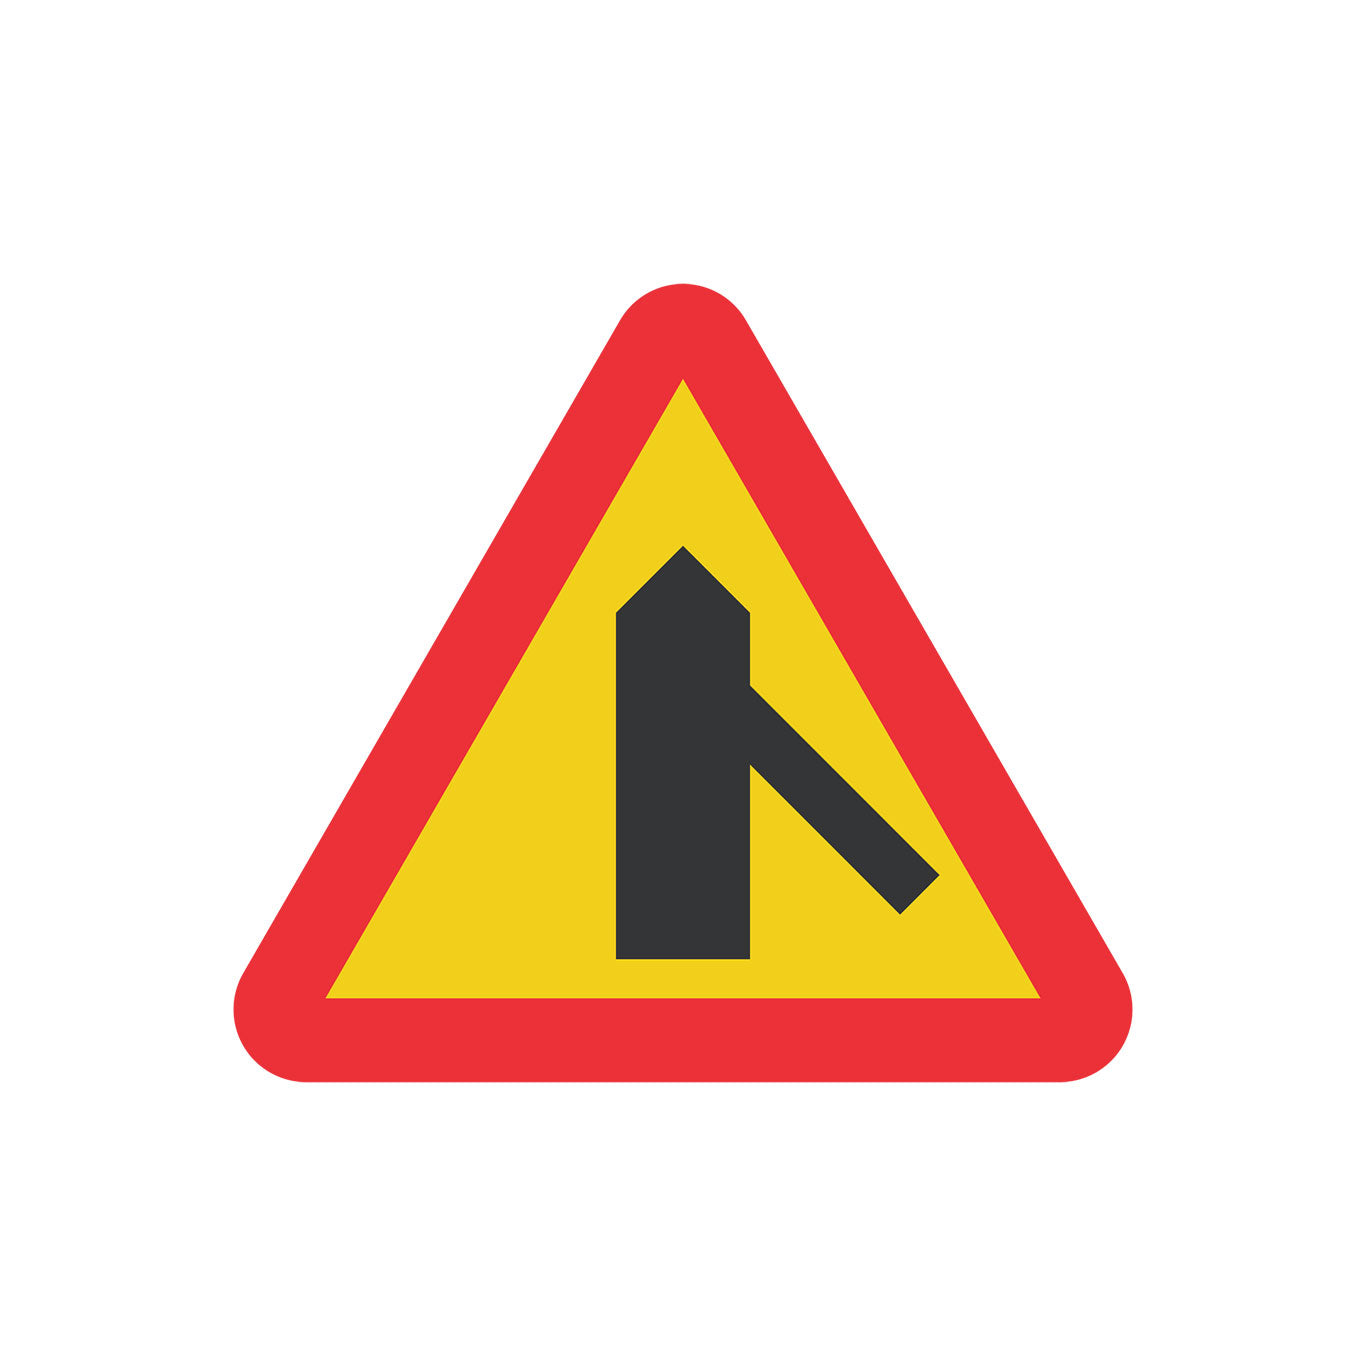 A29 Varning för vägkorsning där anslutande väg har väjningsplikt